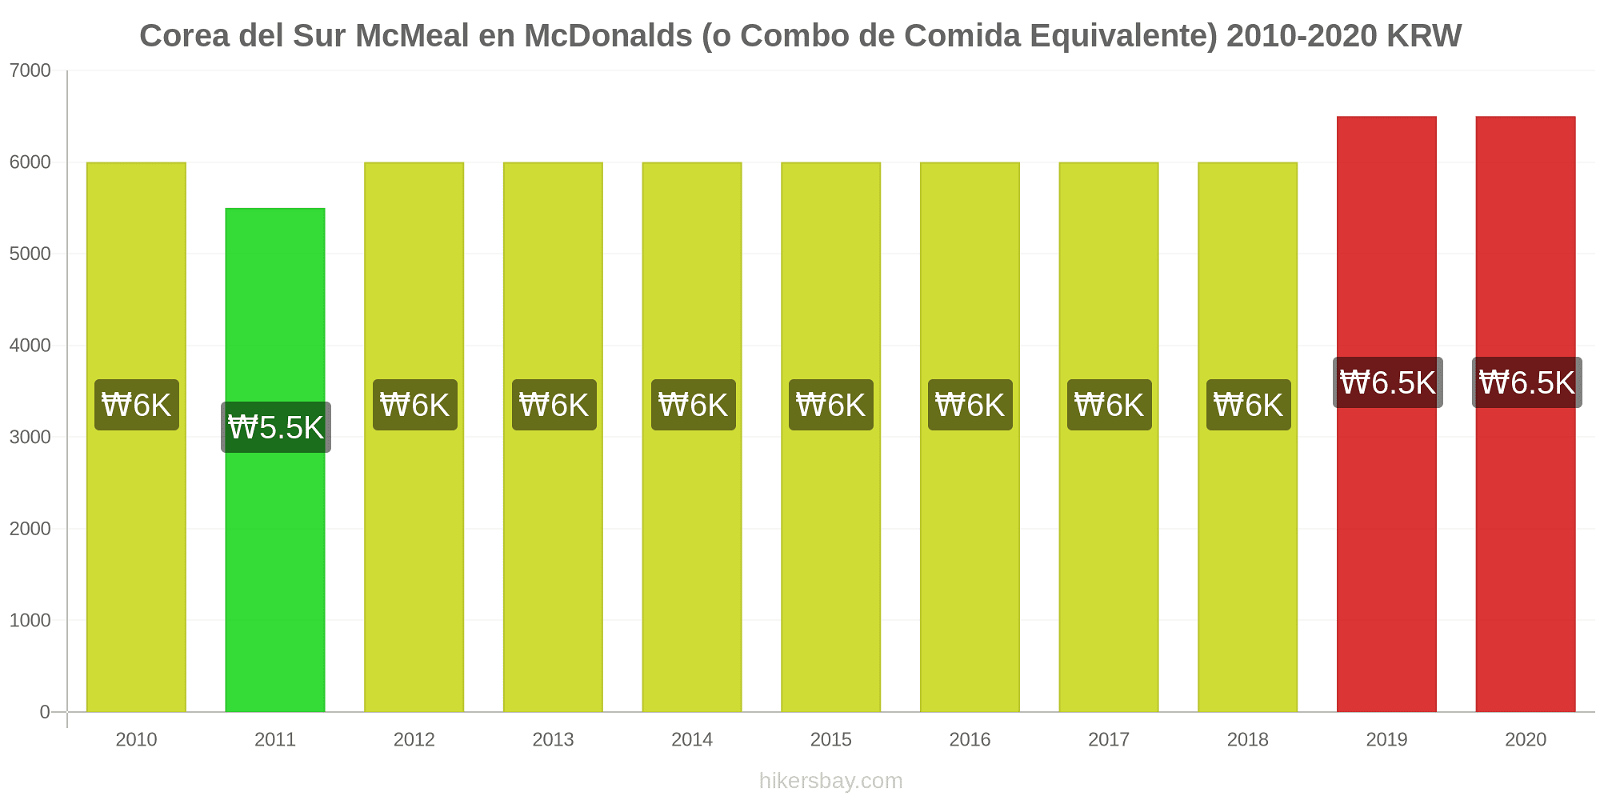 Corea del Sur cambios de precios McMeal en McDonalds (o menú equivalente) hikersbay.com